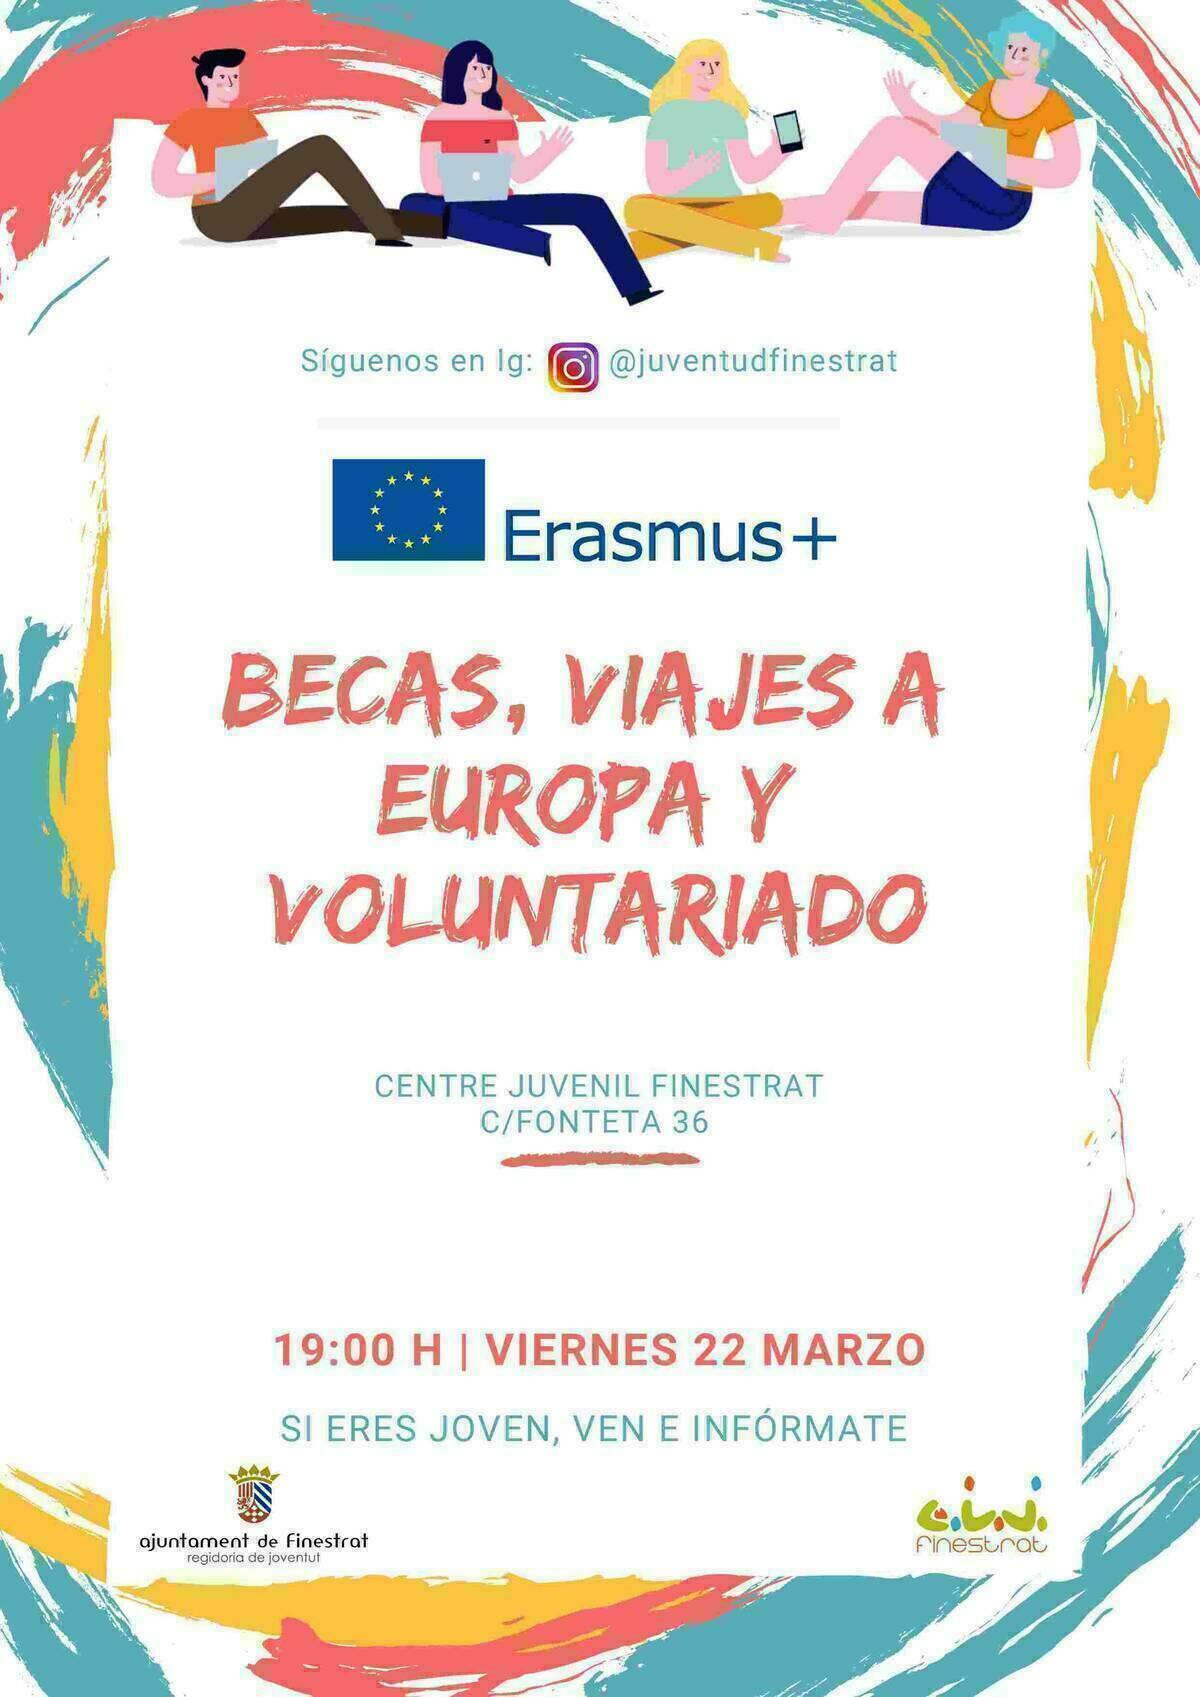 La Concejalía de Juventud de Finestrat organiza una charla para orientar a los jóvenes sobre las becas Erasmus